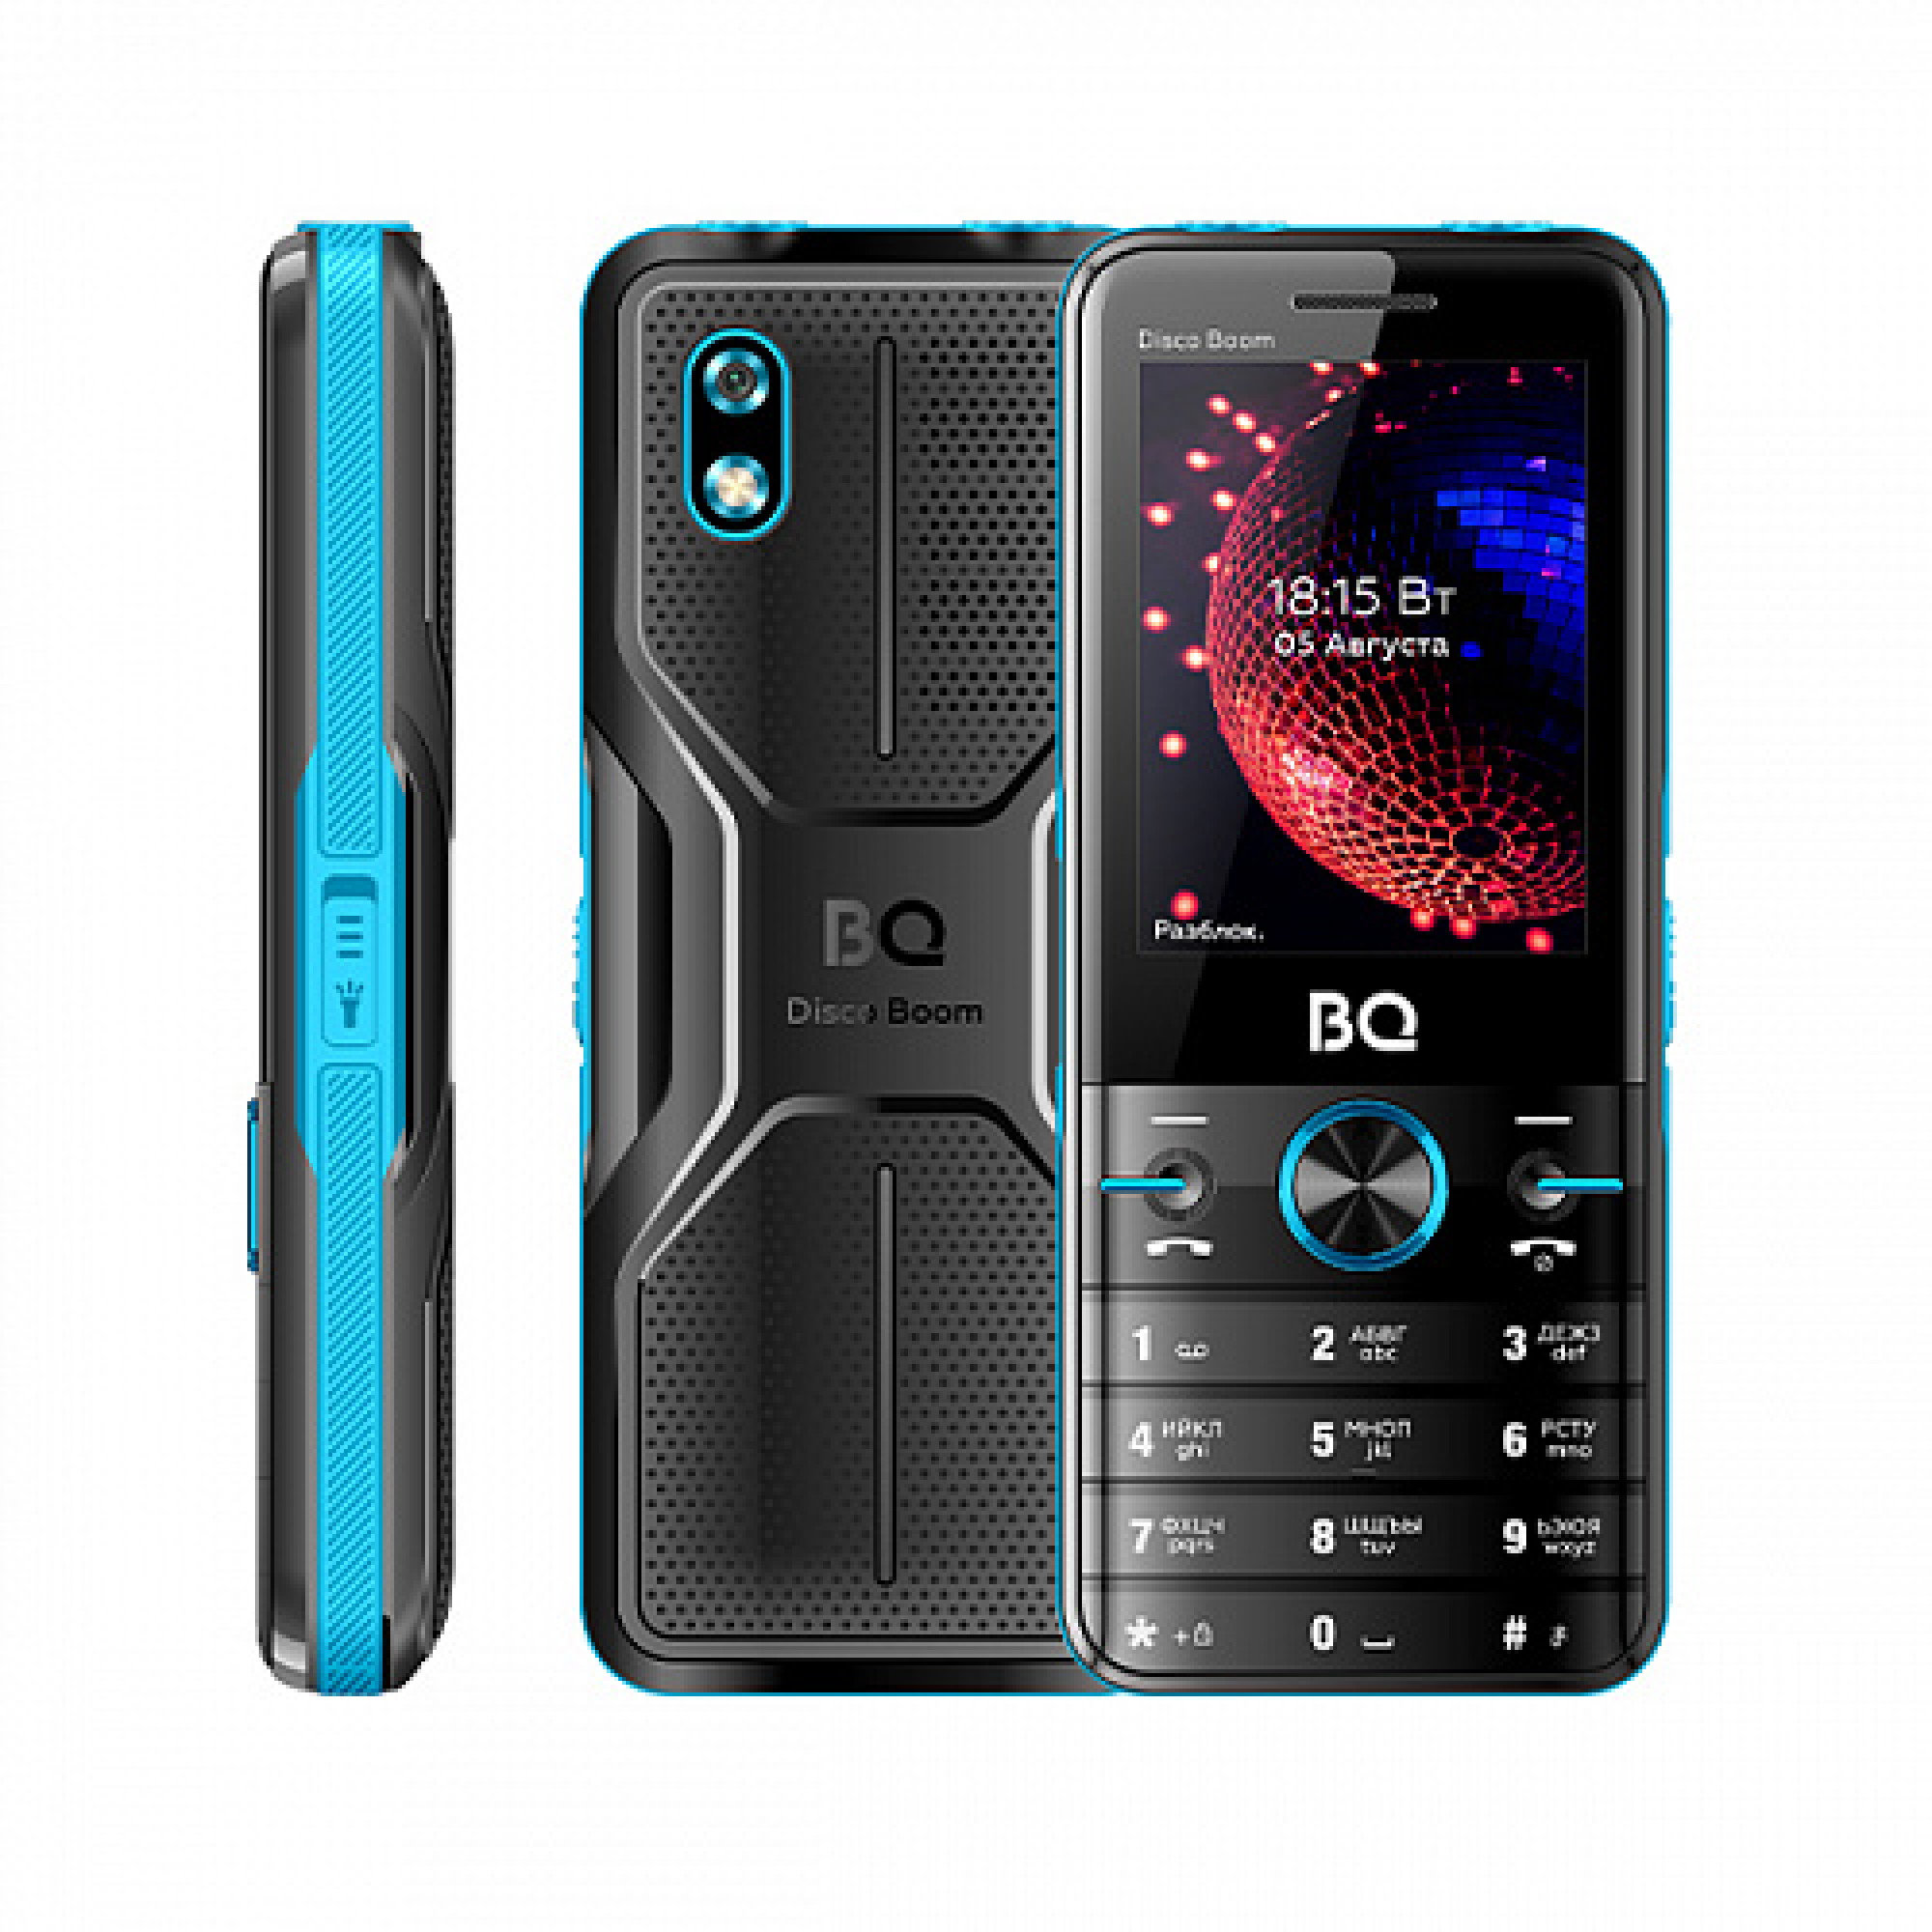 Мобильный телефон BQ BQ-2842 Disco Boom (бирюзовый)